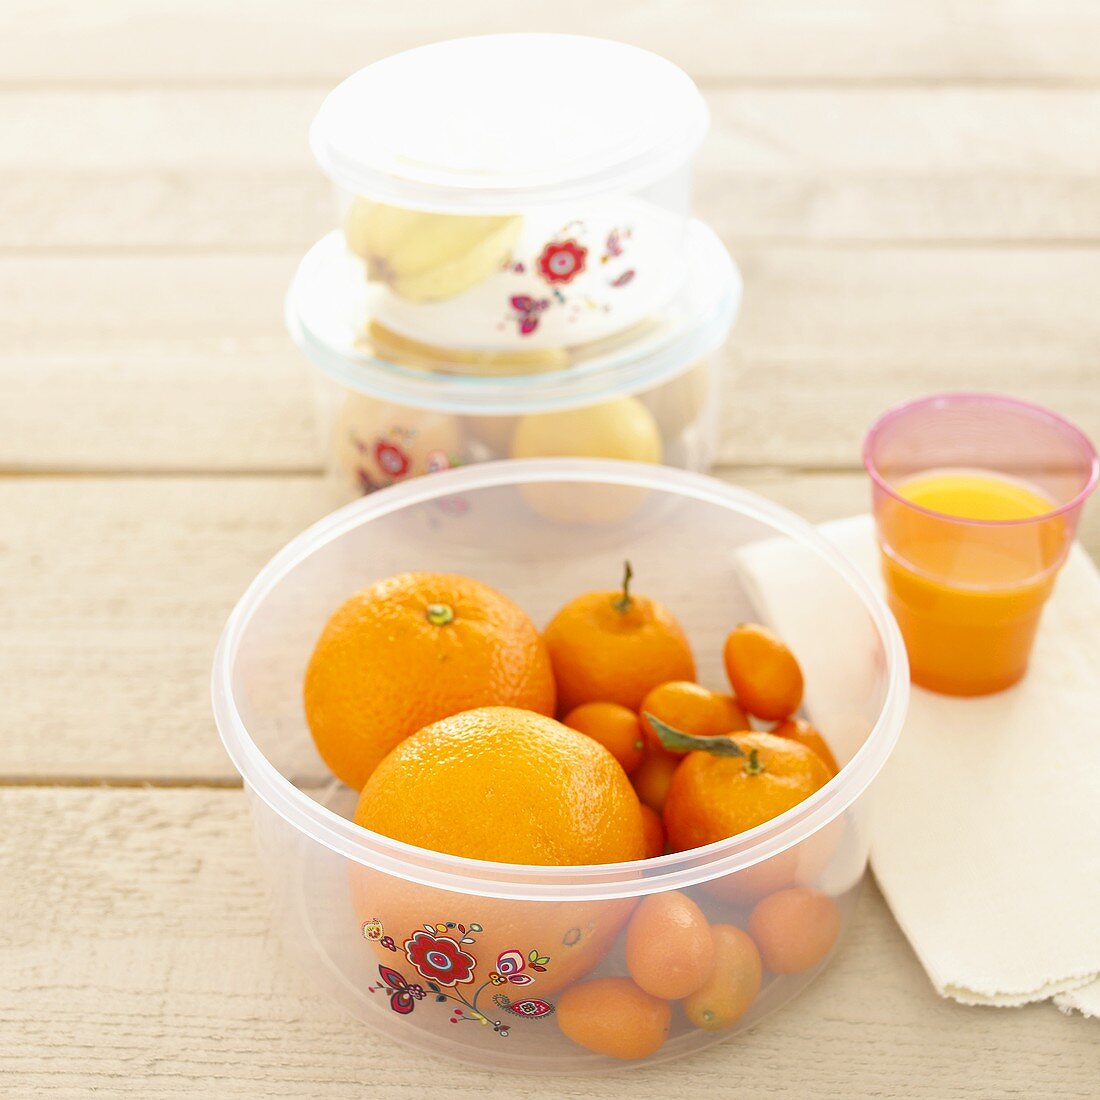 Fresh fruit in plastic containers, orange juice